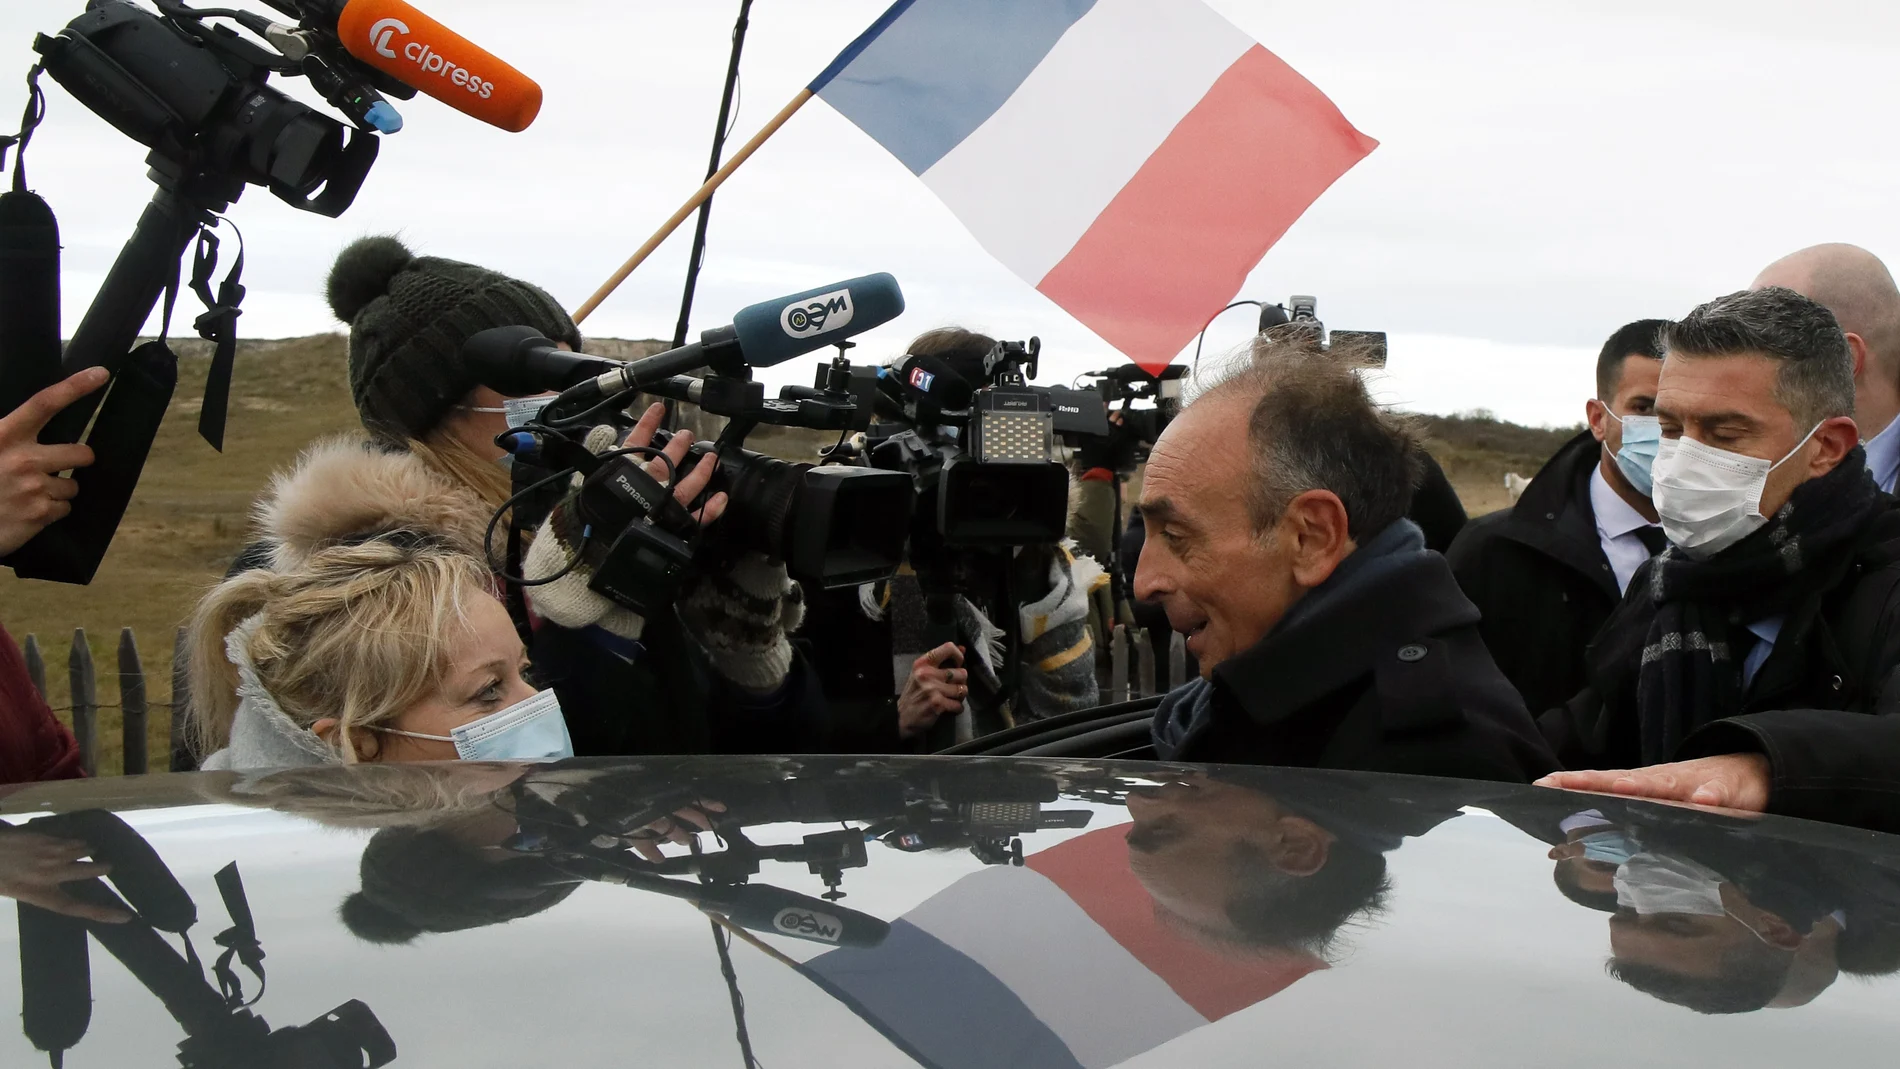 Los periodistas rodean al candidato ultraderechista Éric Zemmour en Calais